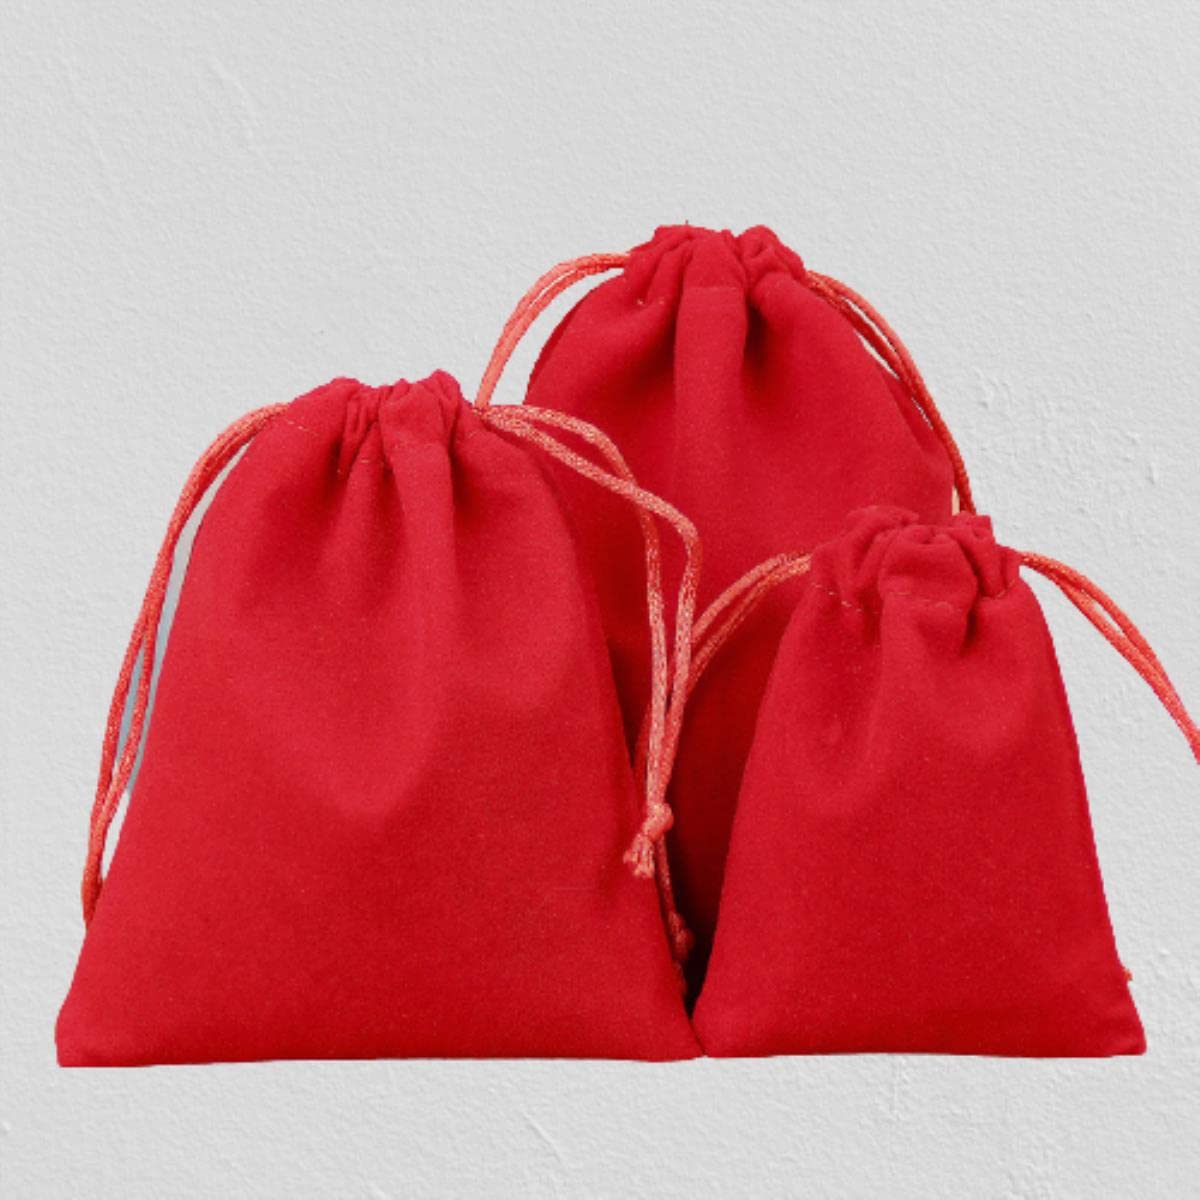 XULIANYI 50 Stück/viel weicher Stoff Samt Kordelzug Geschenktüten für Hochzeit Party Verschiedene Größen Schmuckpaket Elegante Beutel - Rot, 15 x 20 cm (50 Stück)